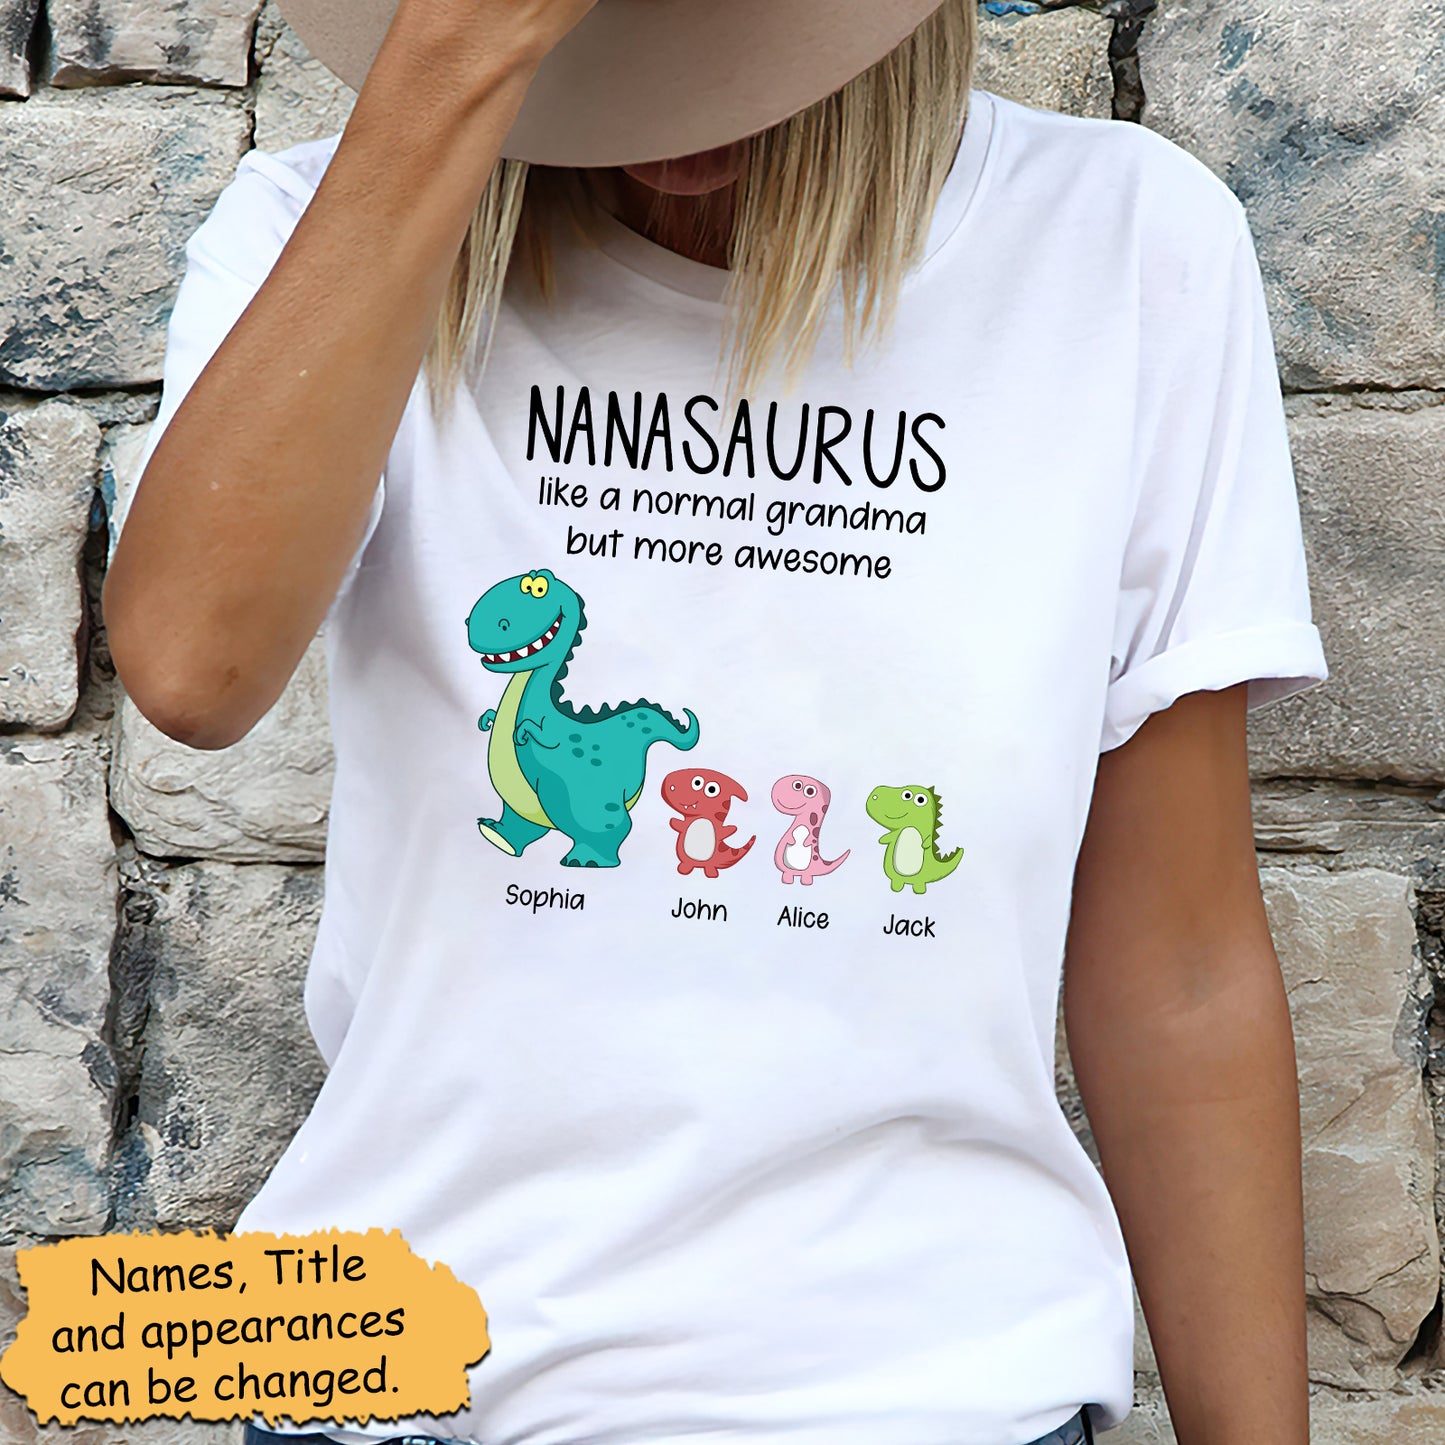 Family - Grandmasaurus And Kids - Personalized Shirt